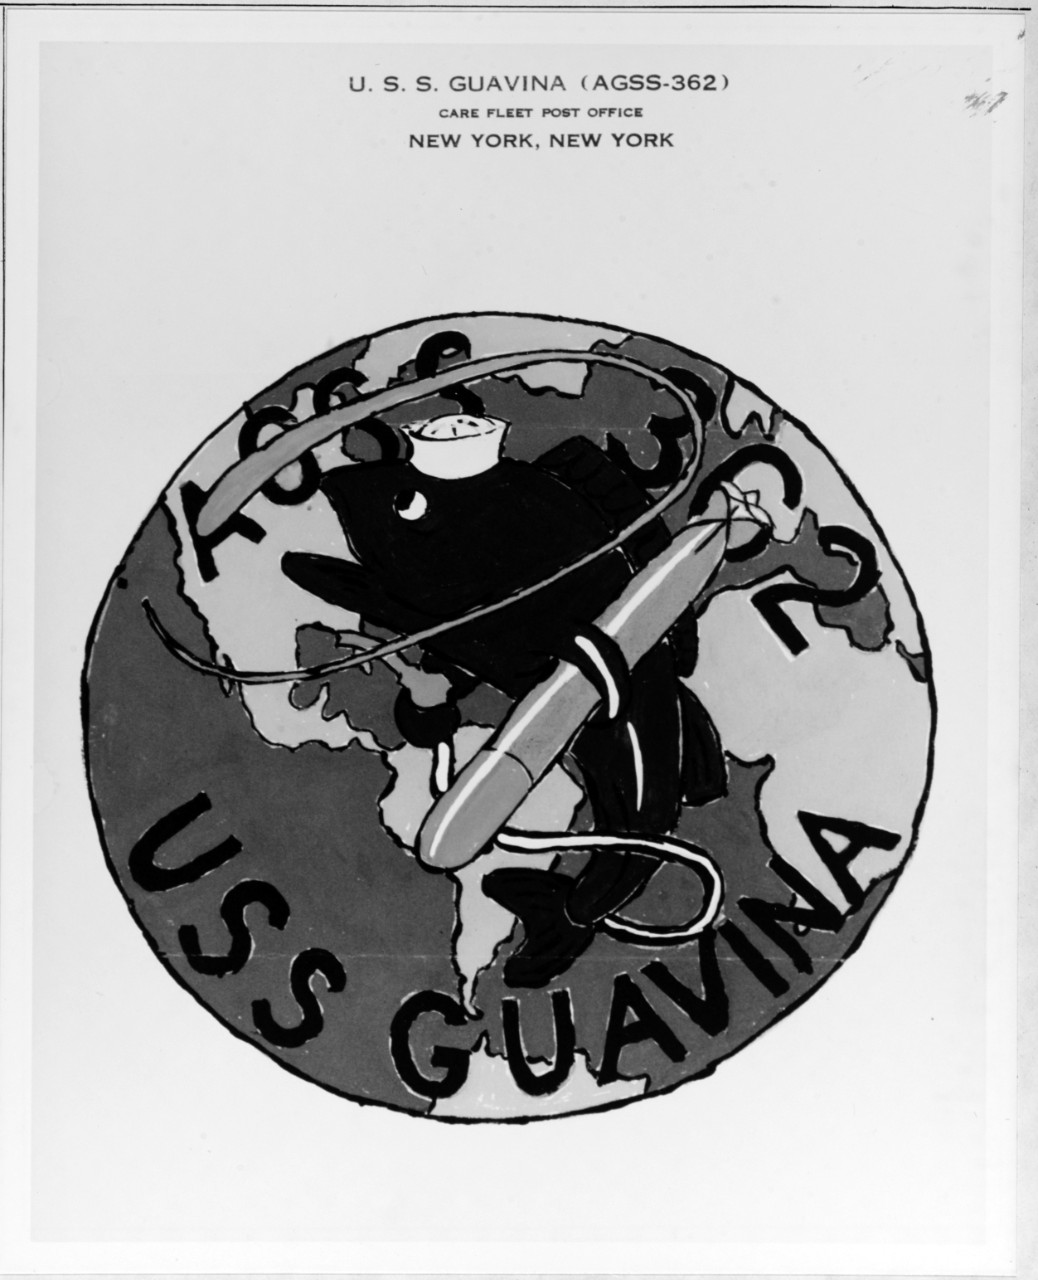 Insignia: USS GUAVINA (AGSS-362)